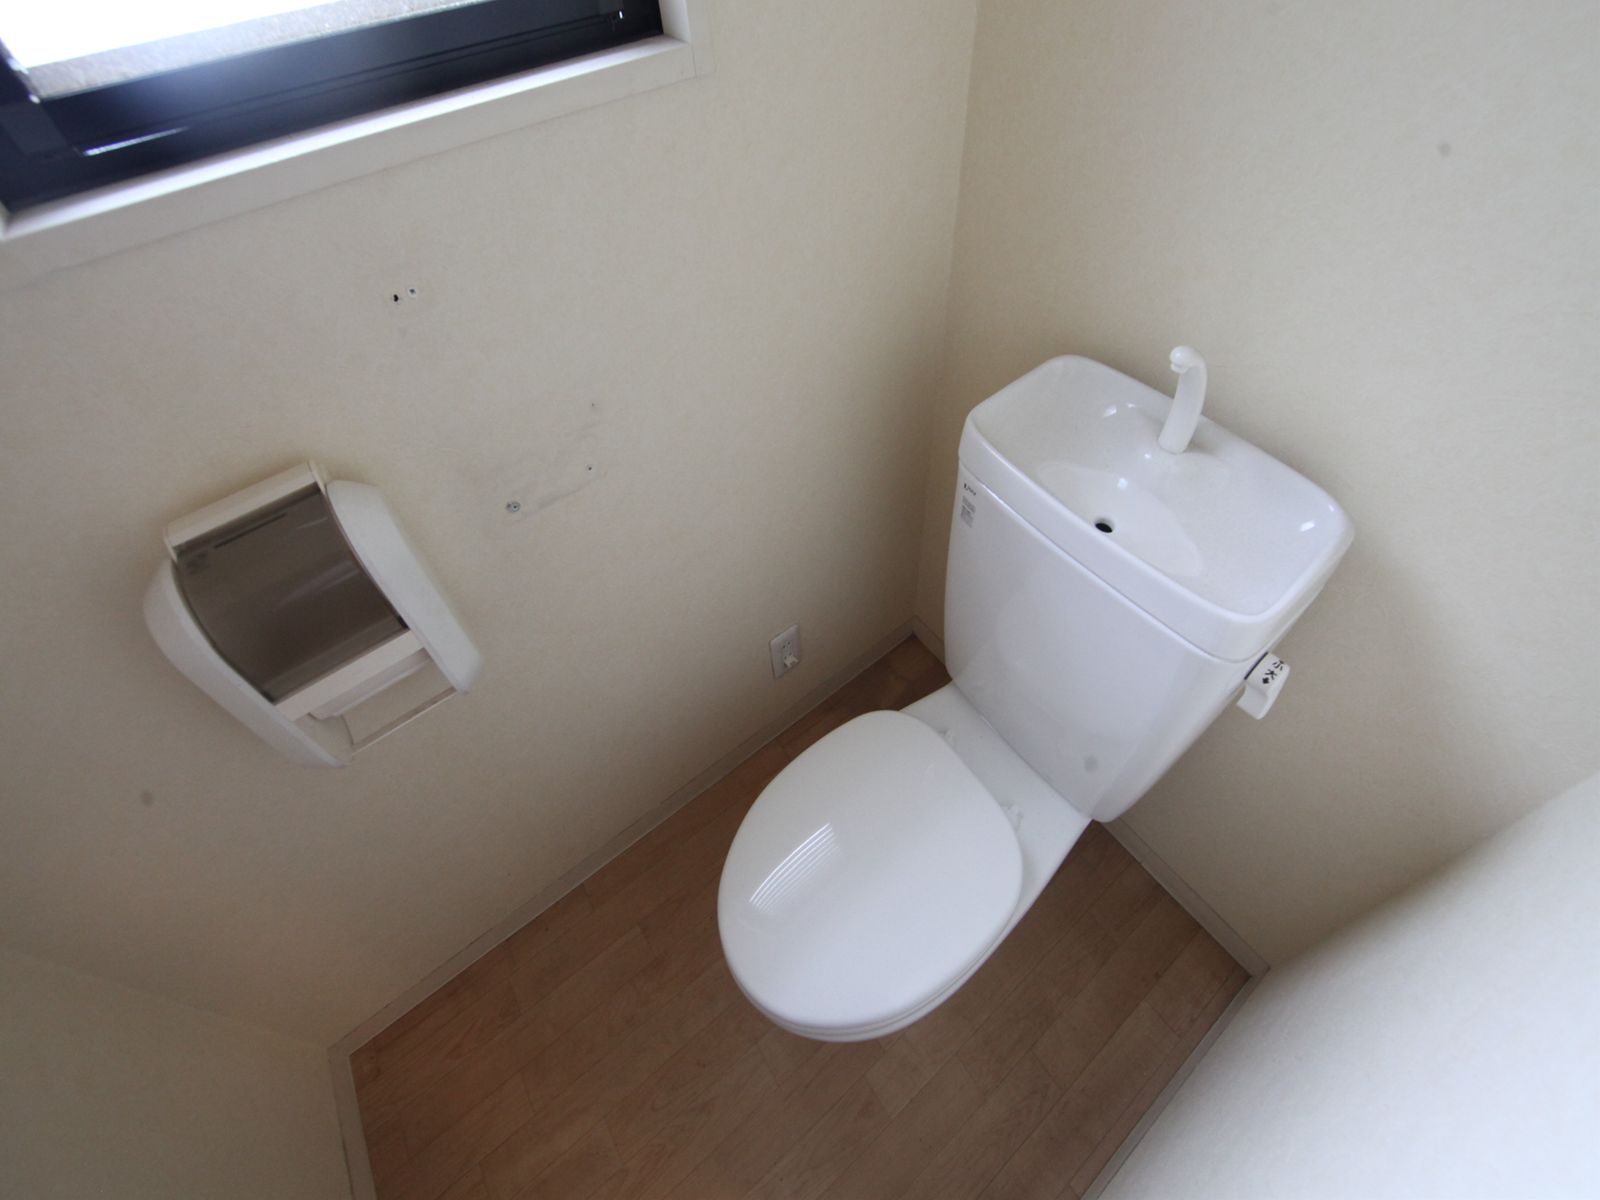 Toilet. toilet With window